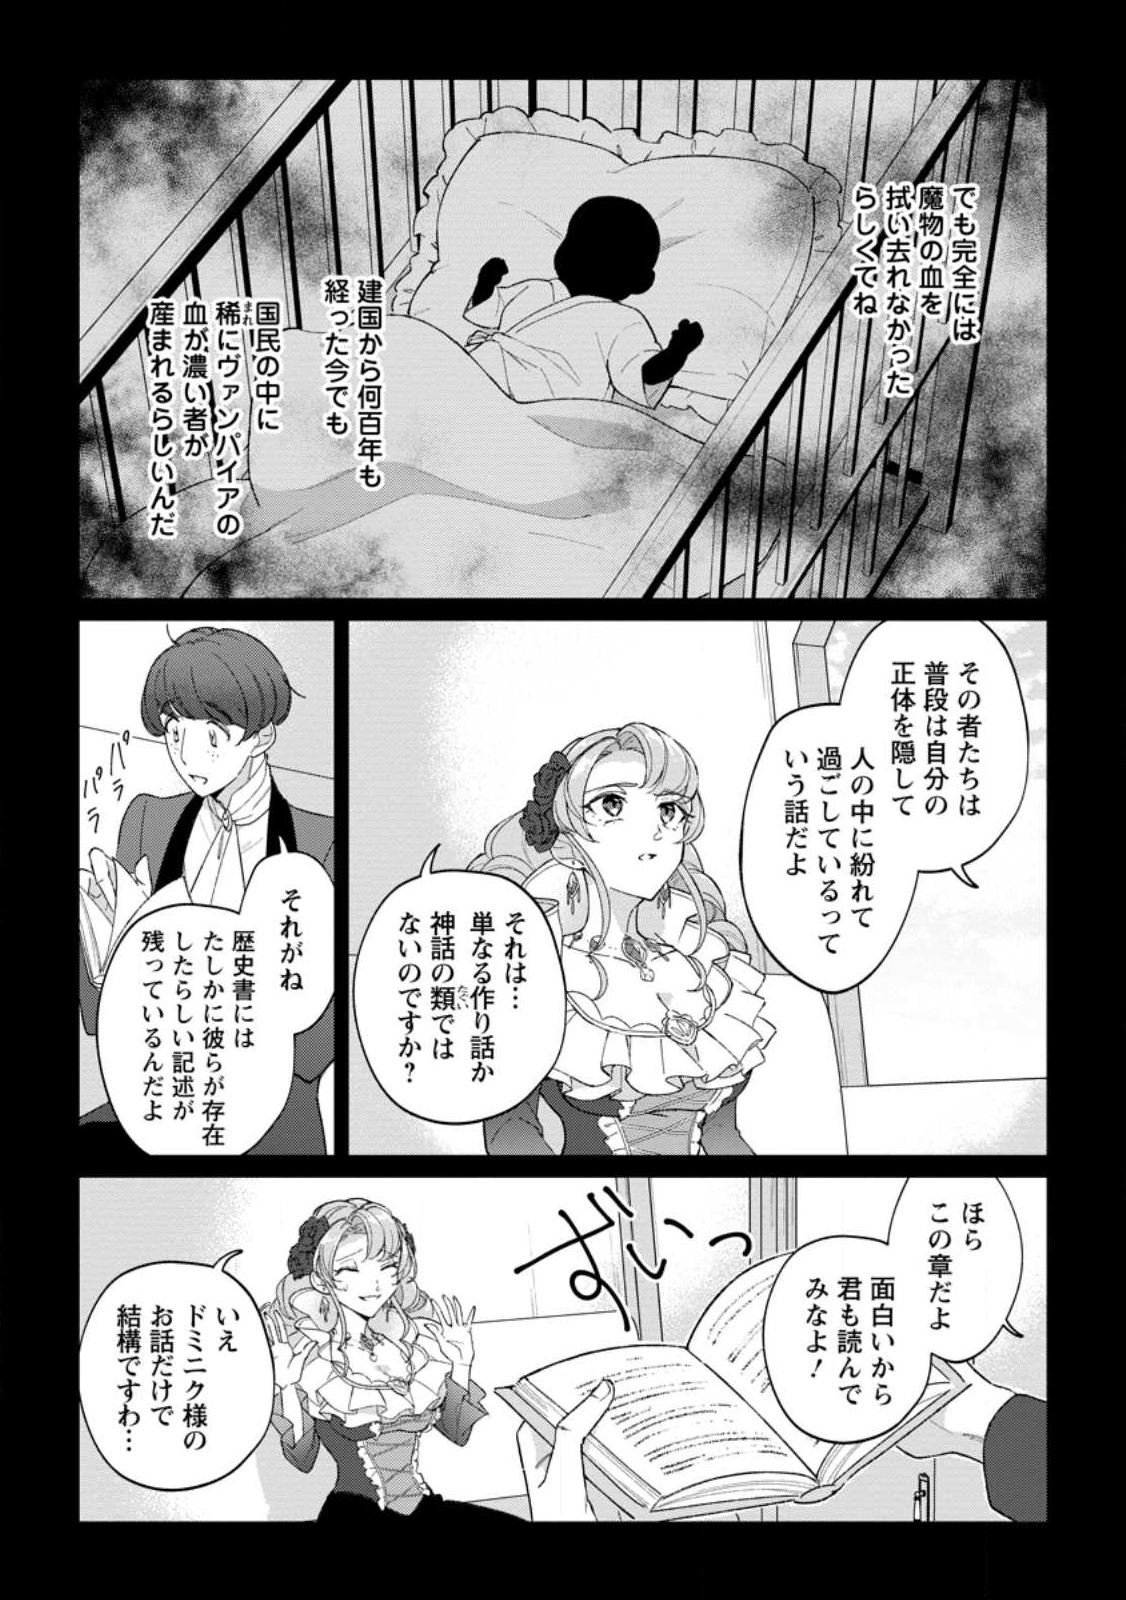 Konyaku Hakisare-Ka wo Owareta Shoujo no Te wo Tori, Tensai Majutsushi wa Yuuga ni Hizamazuku - Chapter 15.2 - Page 2